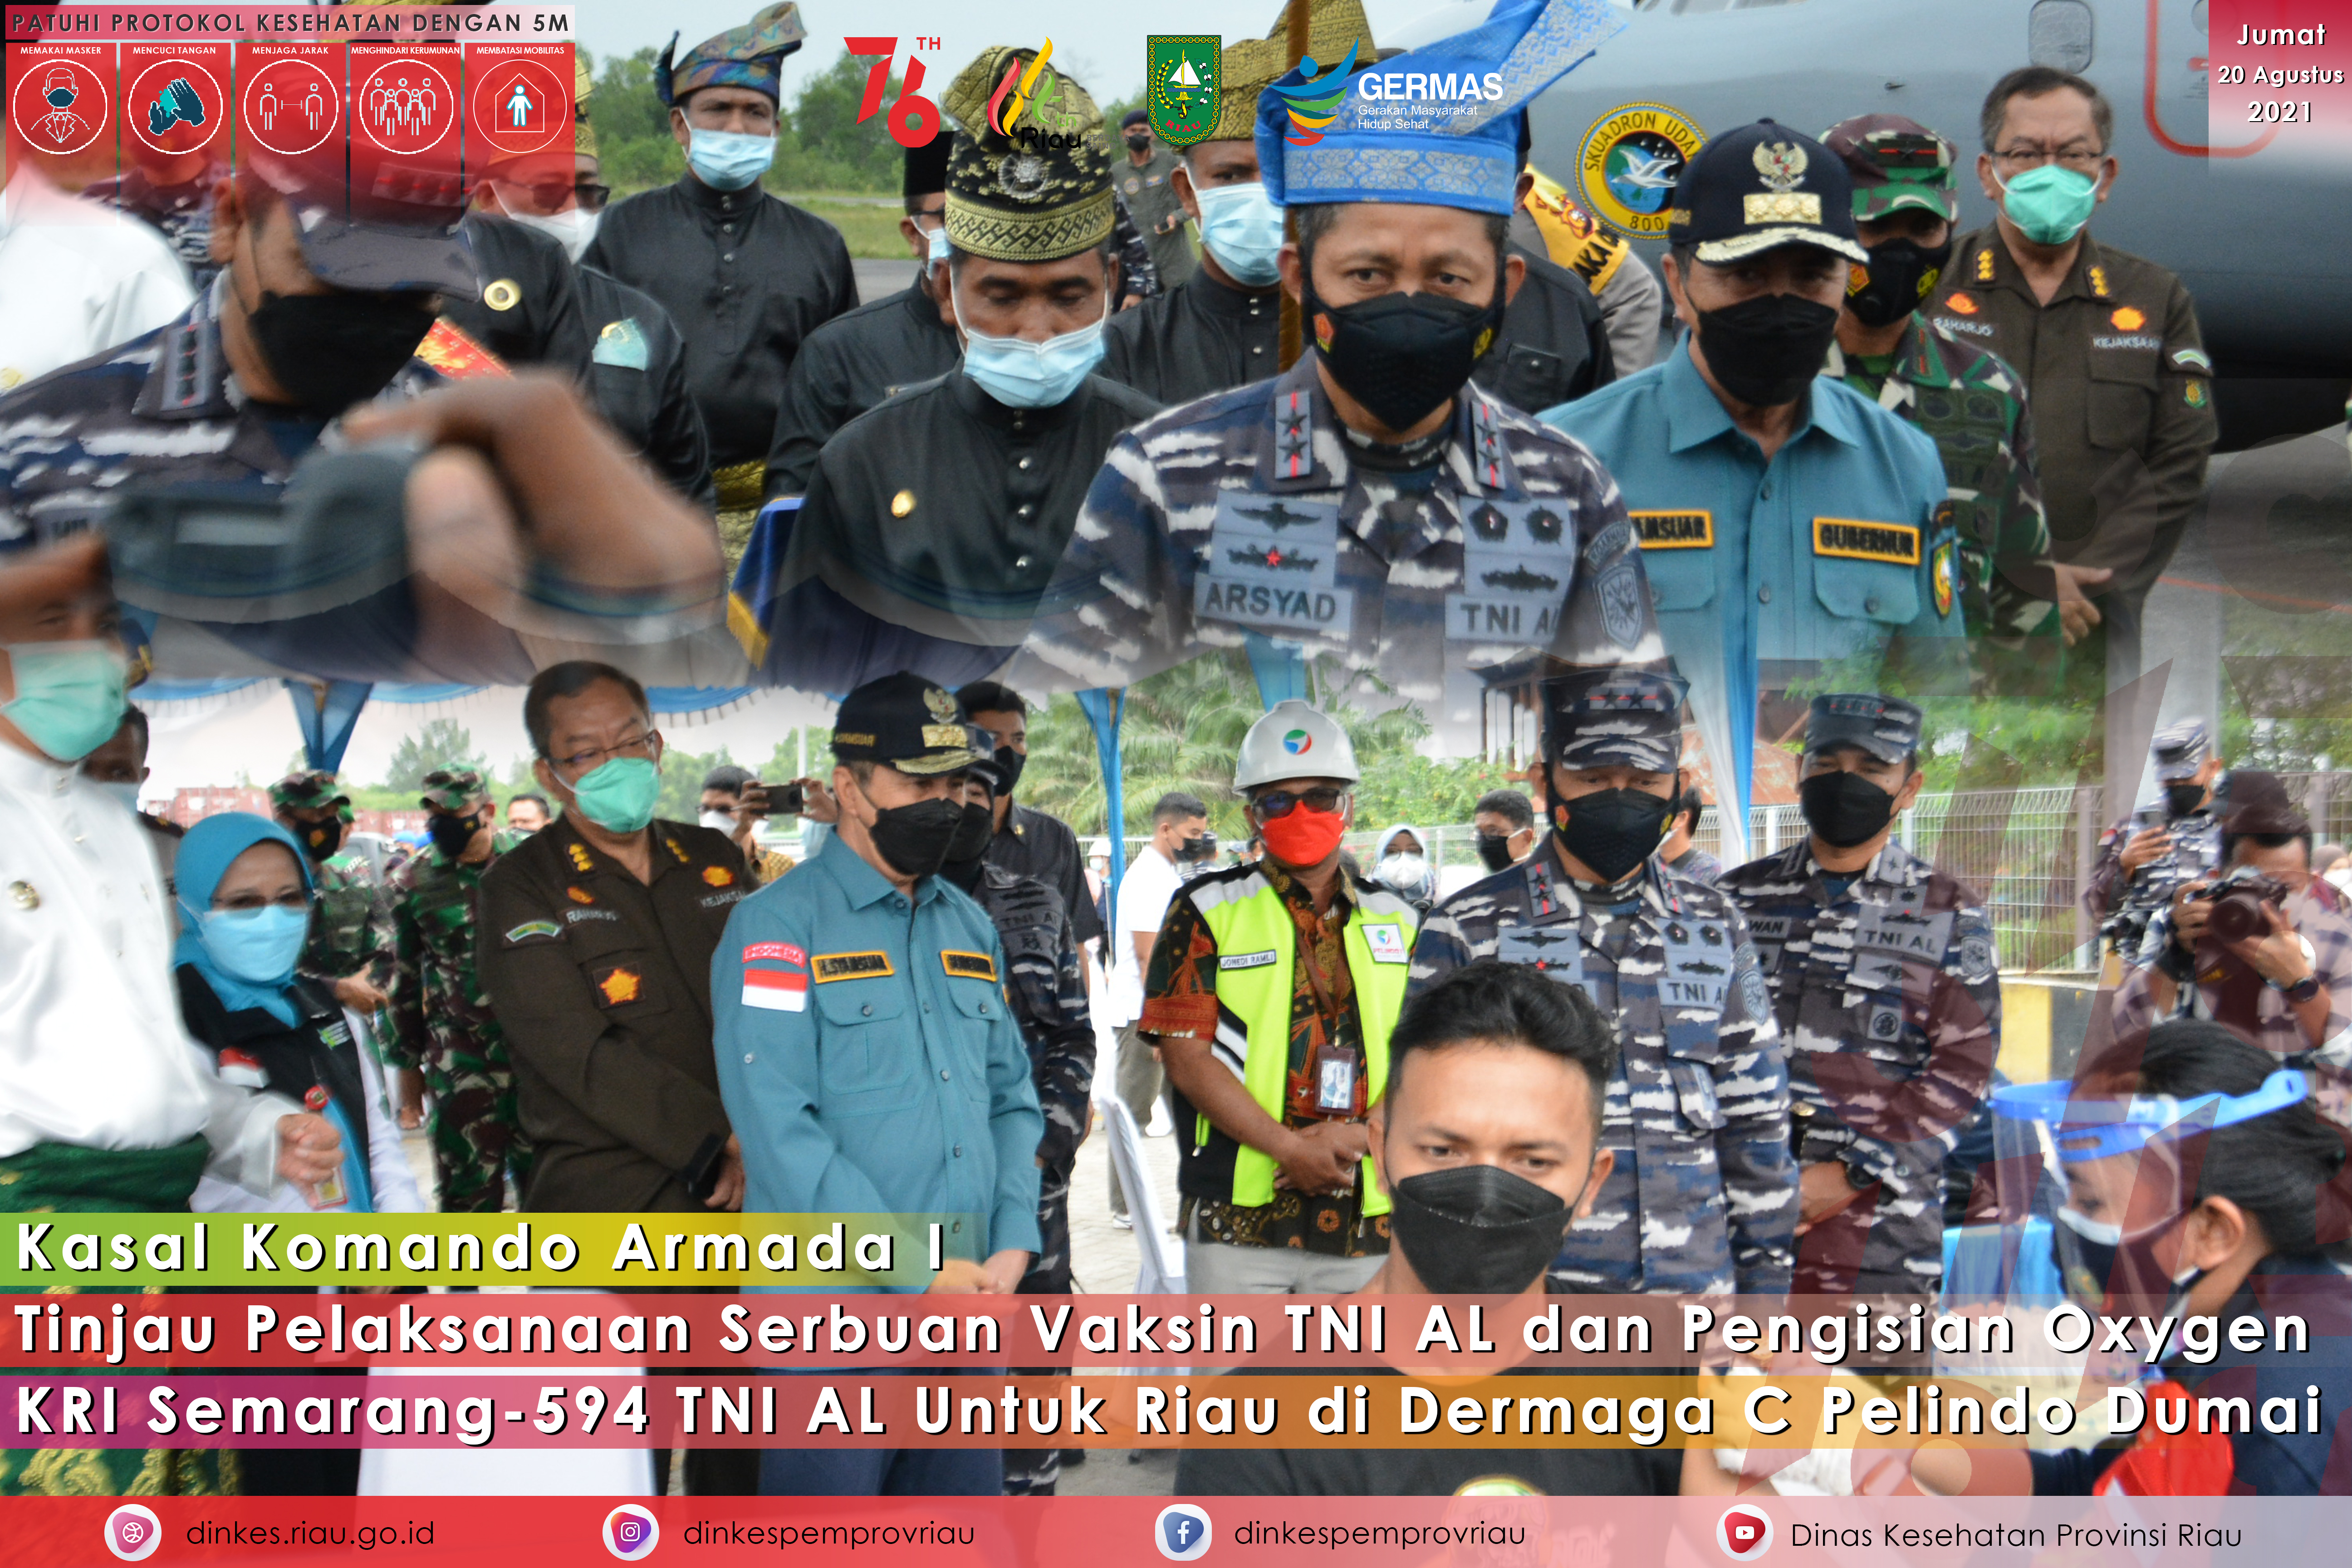 Gubri tinjau pelaksanaan vaksinasi dan pengisian oksigen KRI Semarang-594 di dermaga dumai